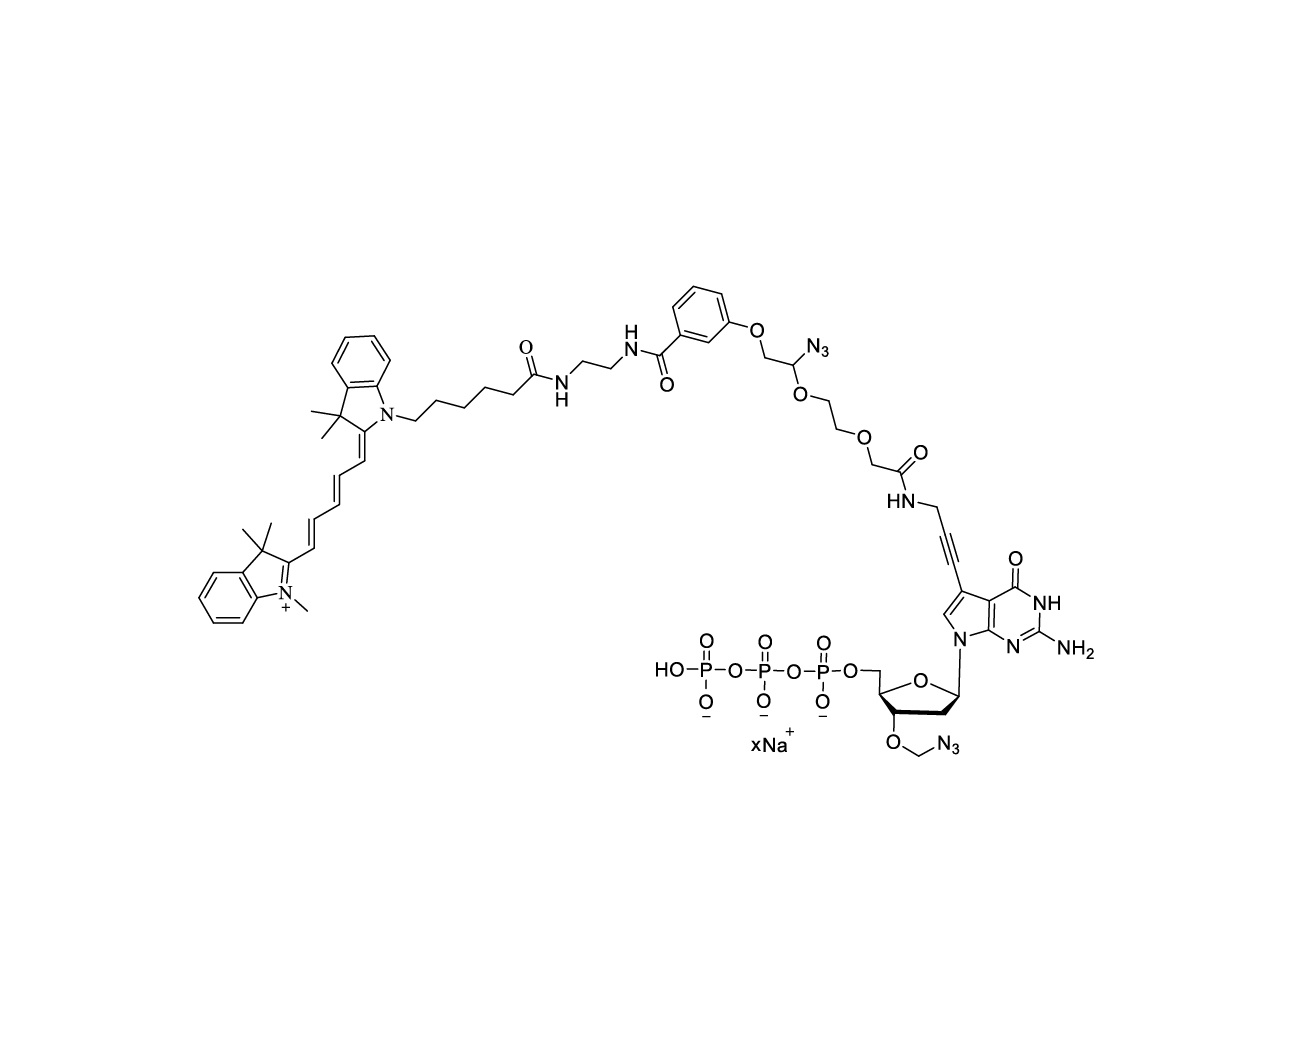 Cy5-linker-PA-3'-O-azidomethyl-dGTP 10mM Sodium Solution